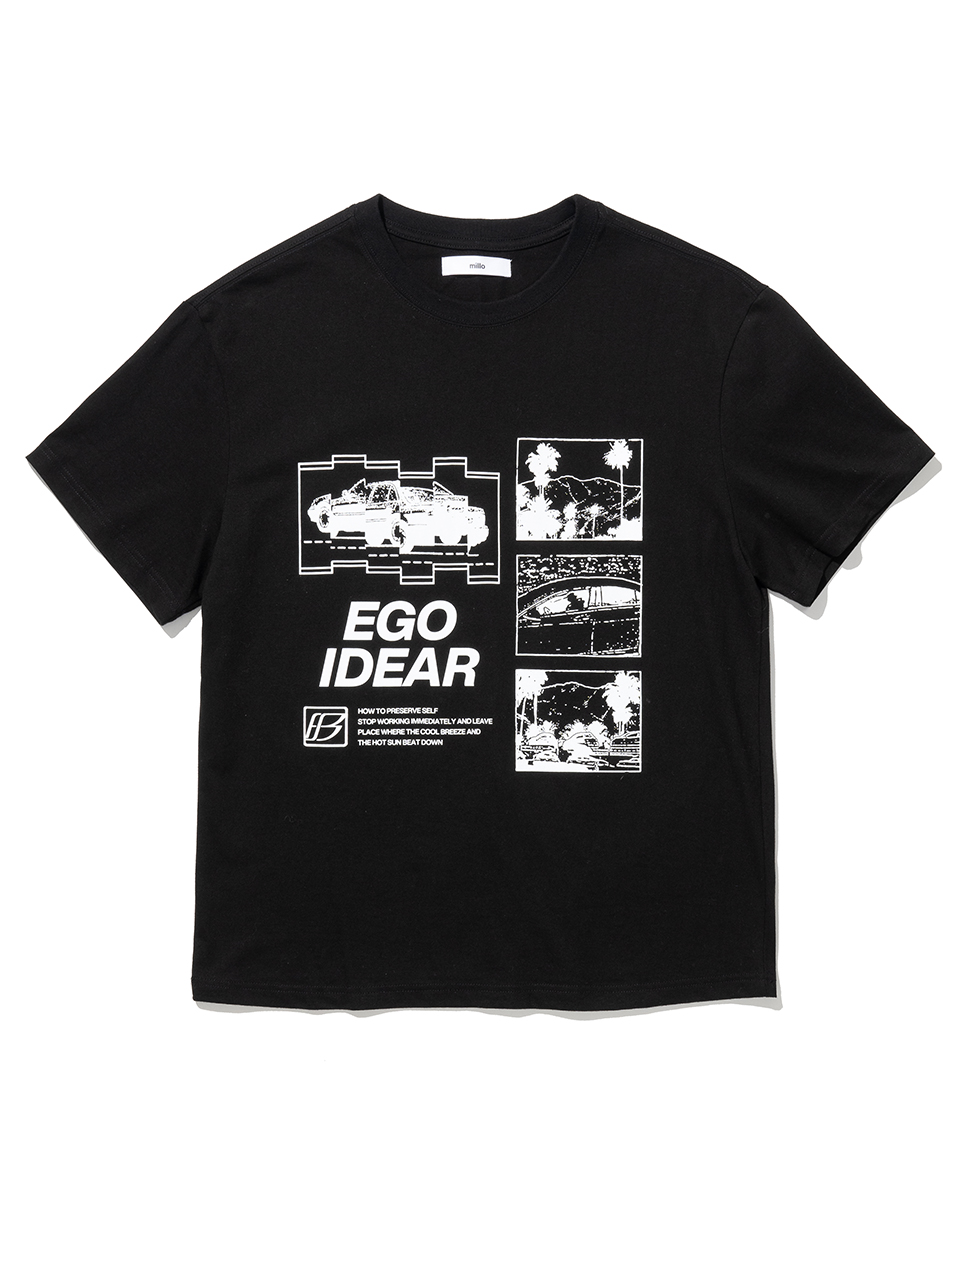 Ego Idear T-Shirt - Black